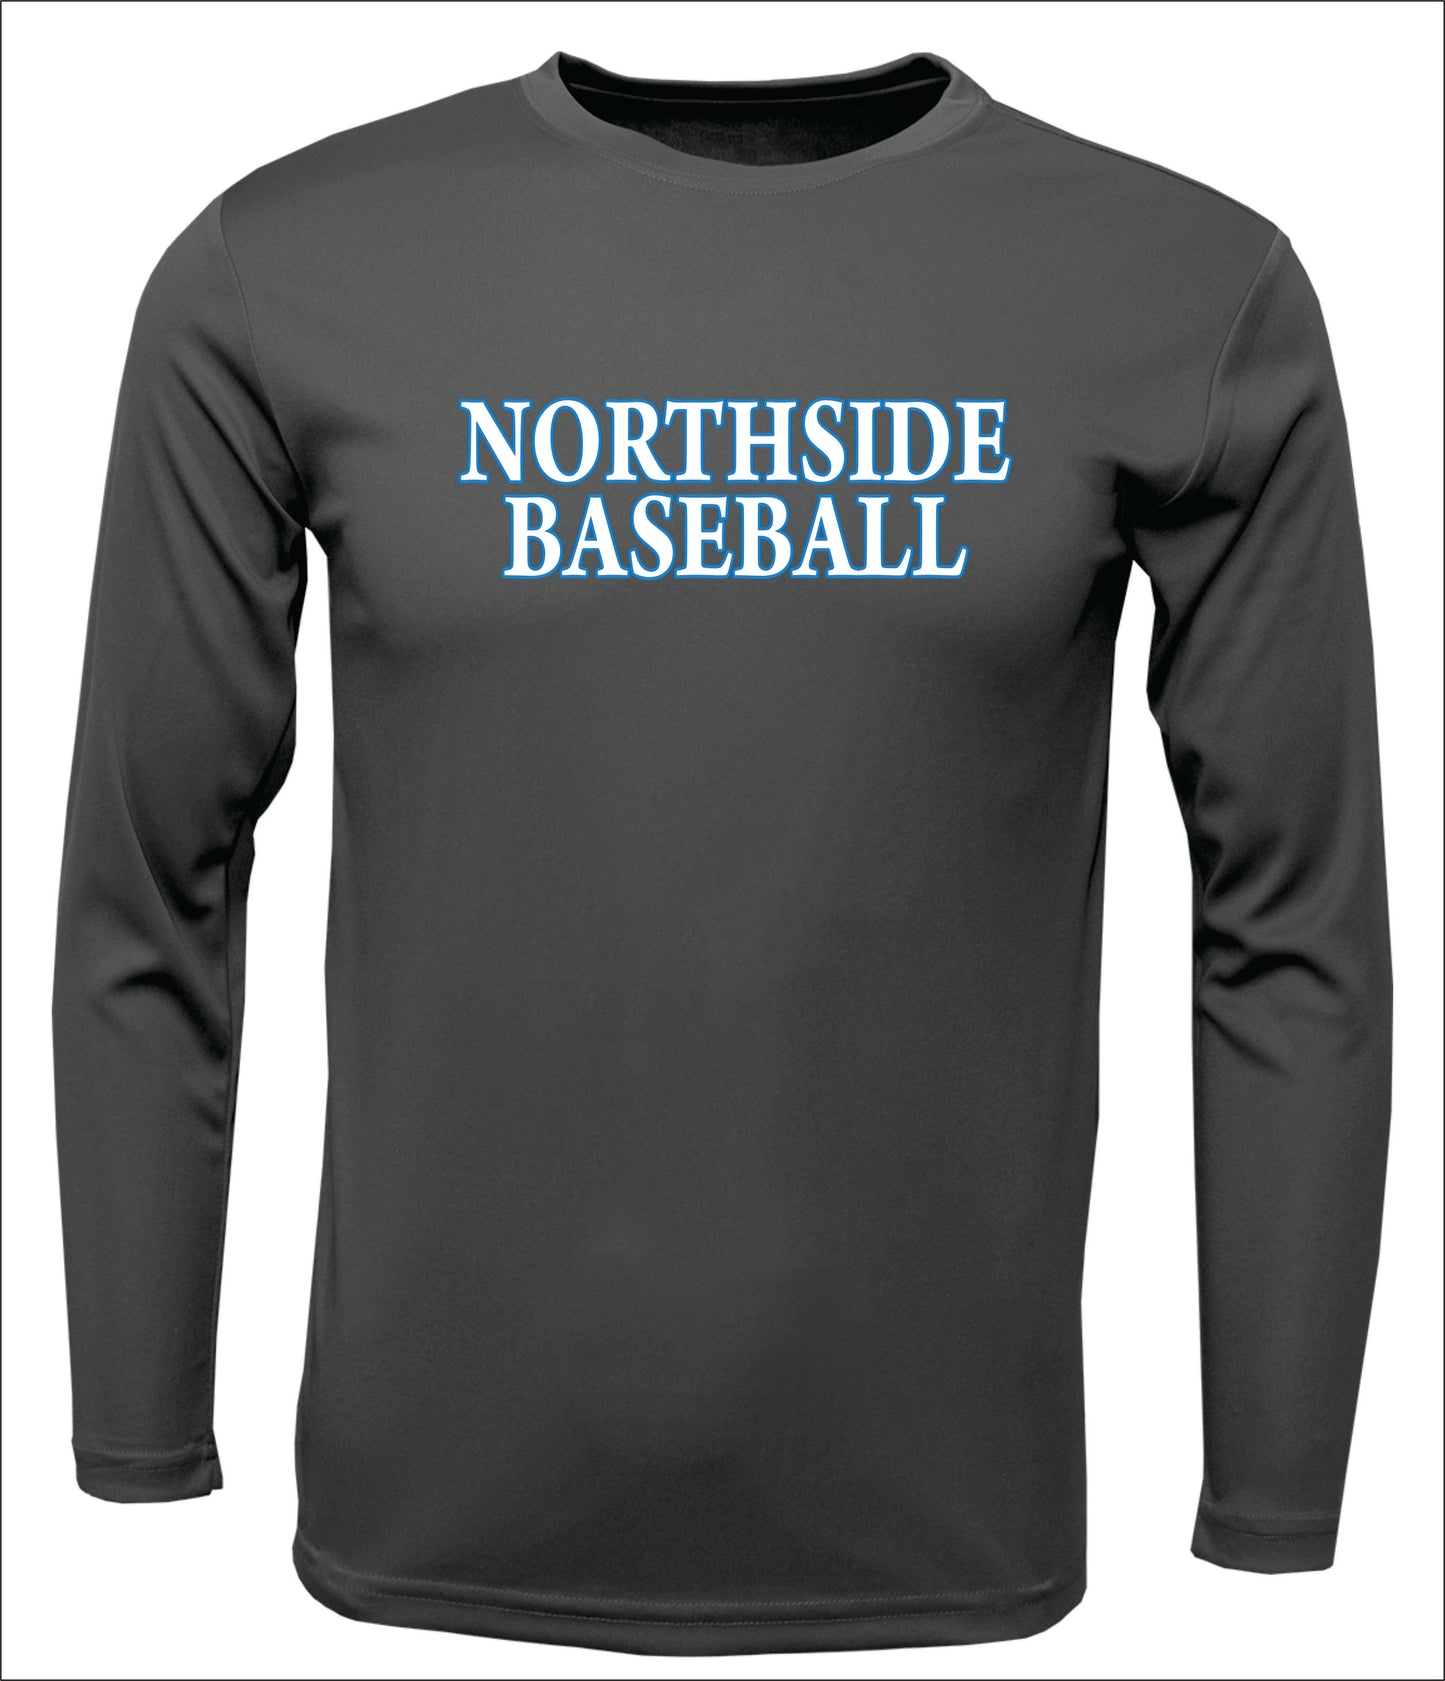 Northside Baseball Long-Sleeve Cotton T-shirt